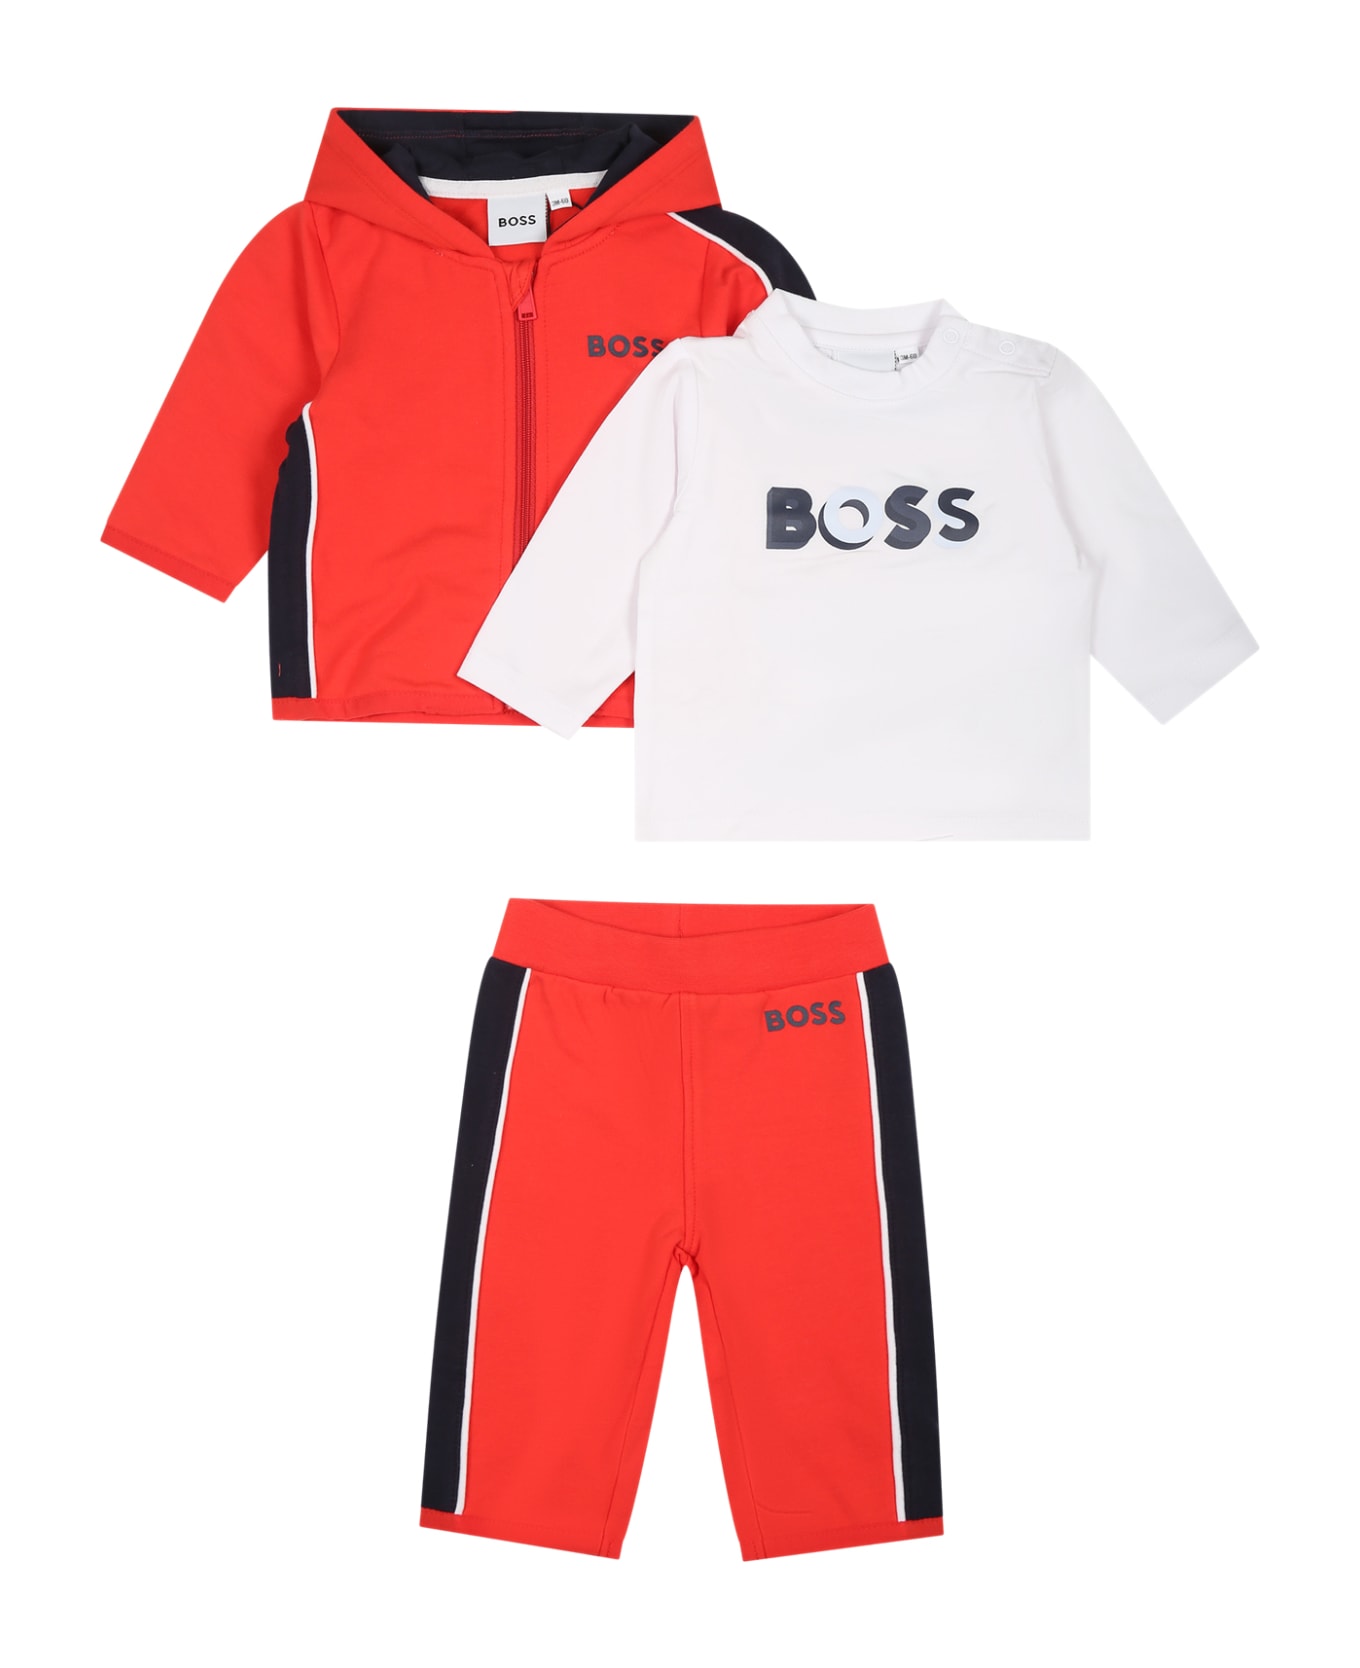 Hugo Boss Orange Set For Baby Boy With Logo - Orange